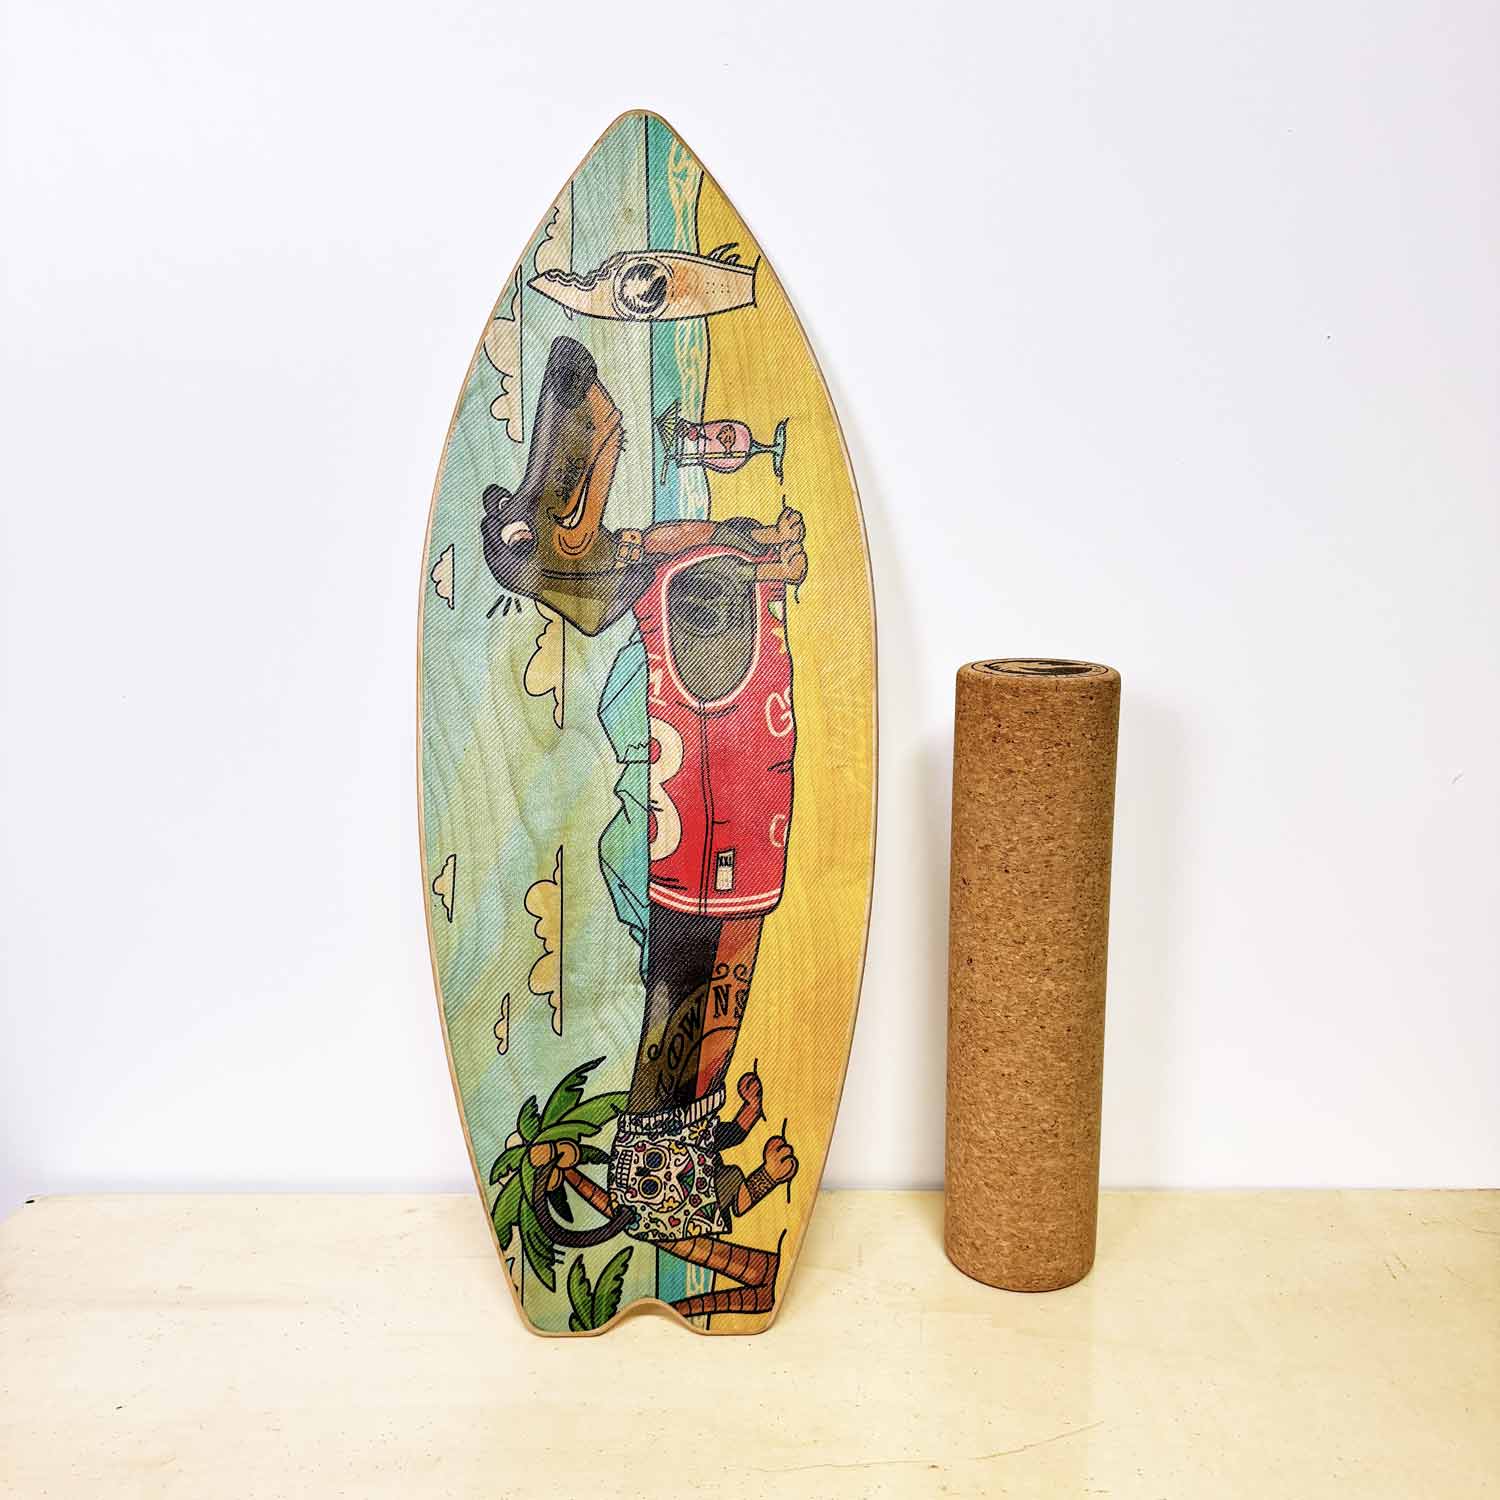 balance board a forma di tavola da surf con disegno di bassotto sulla spiaggia con il mare - algal board - sea doggy style balance board